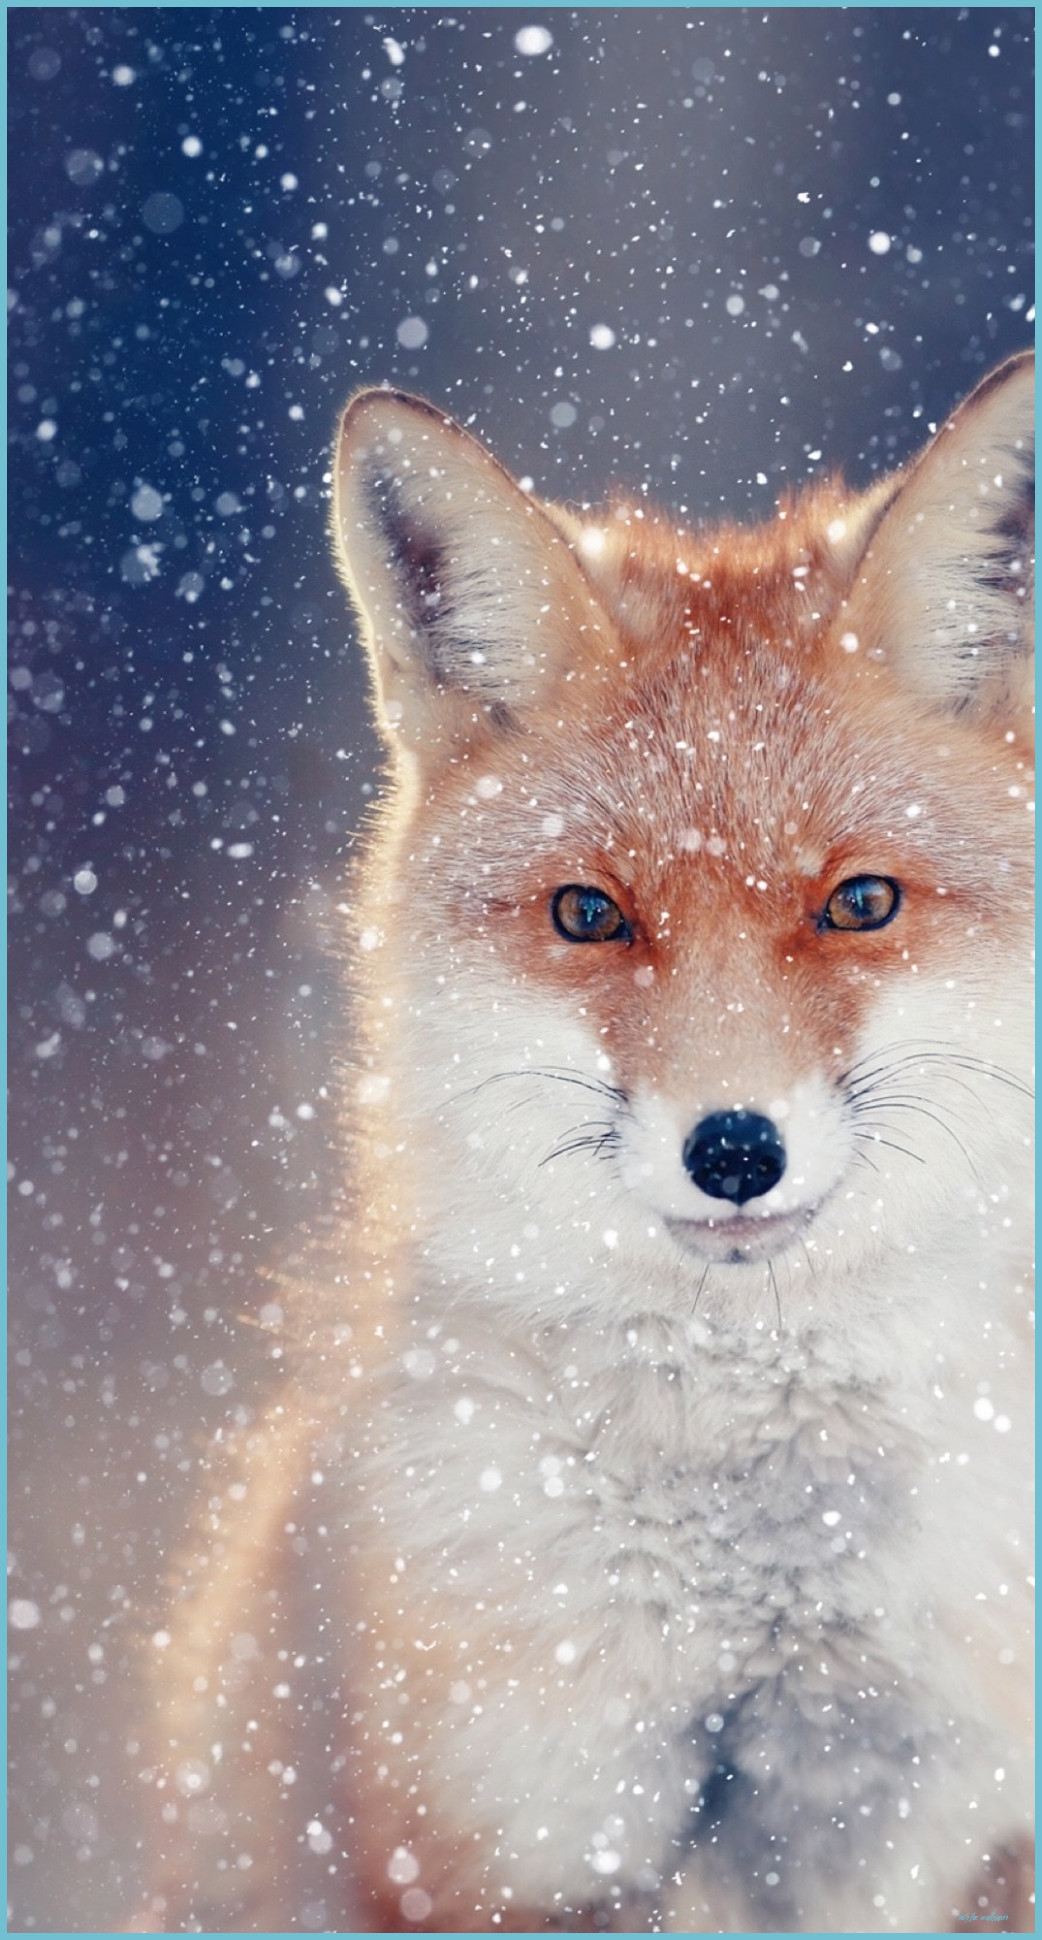 The Real Reason Behind Cute Fox Wallpaper. Cute Fox Wallpaper